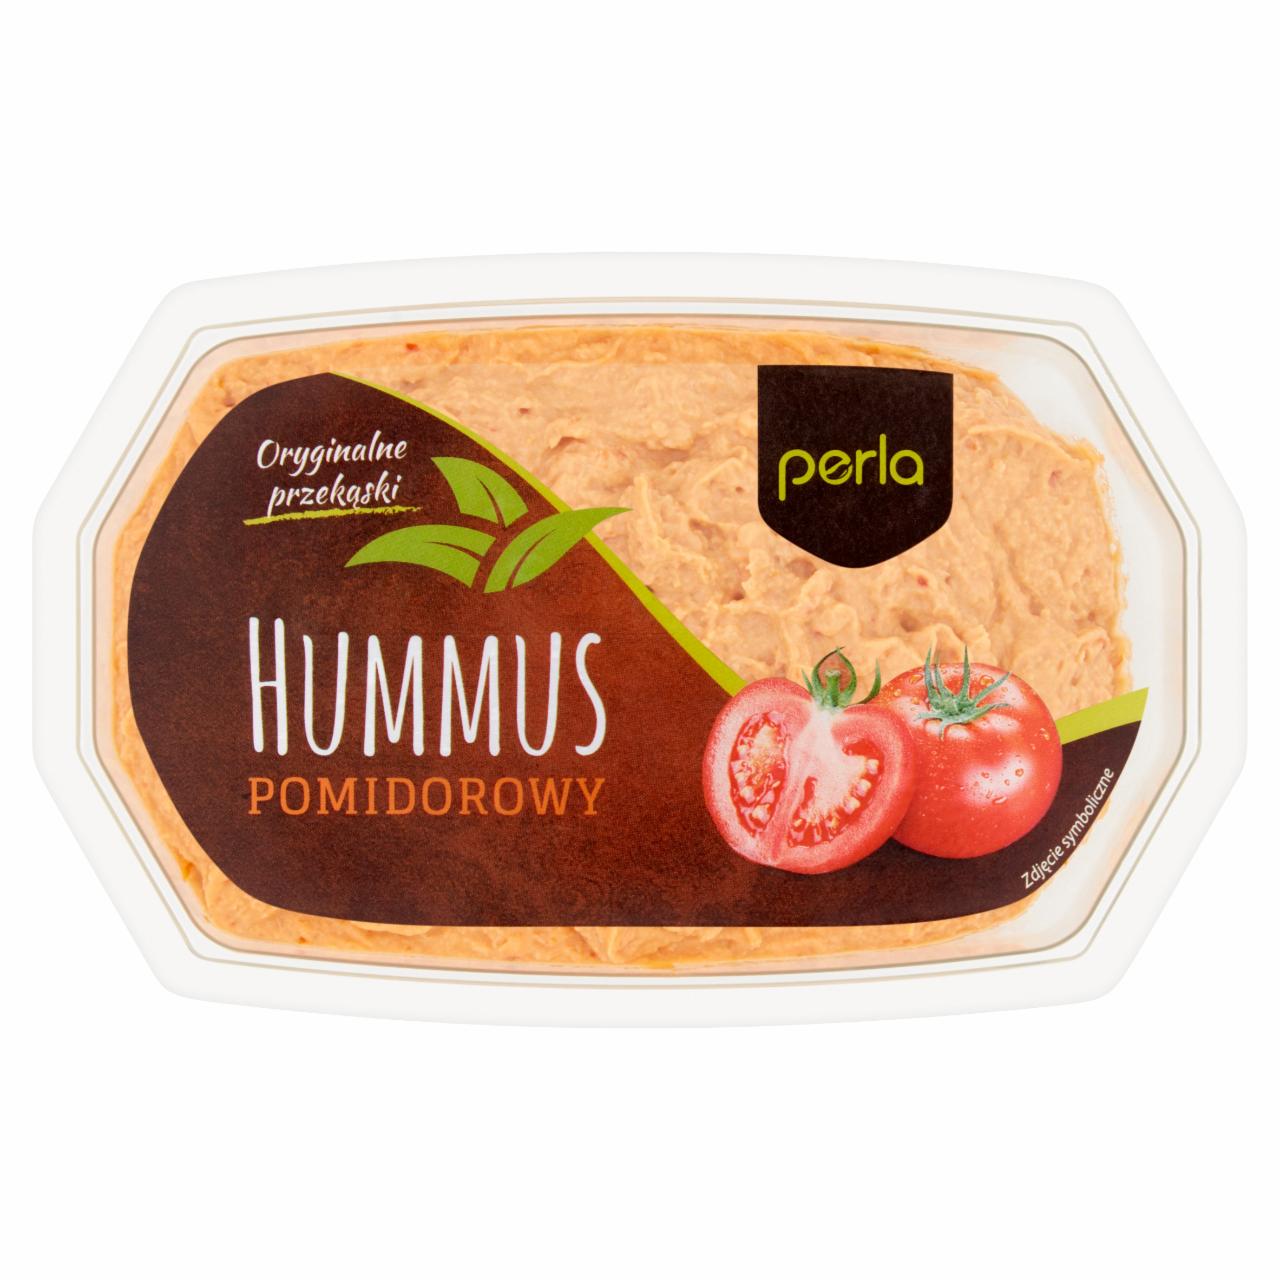 Zdjęcia - Perla Hummus pomidorowy 180 g